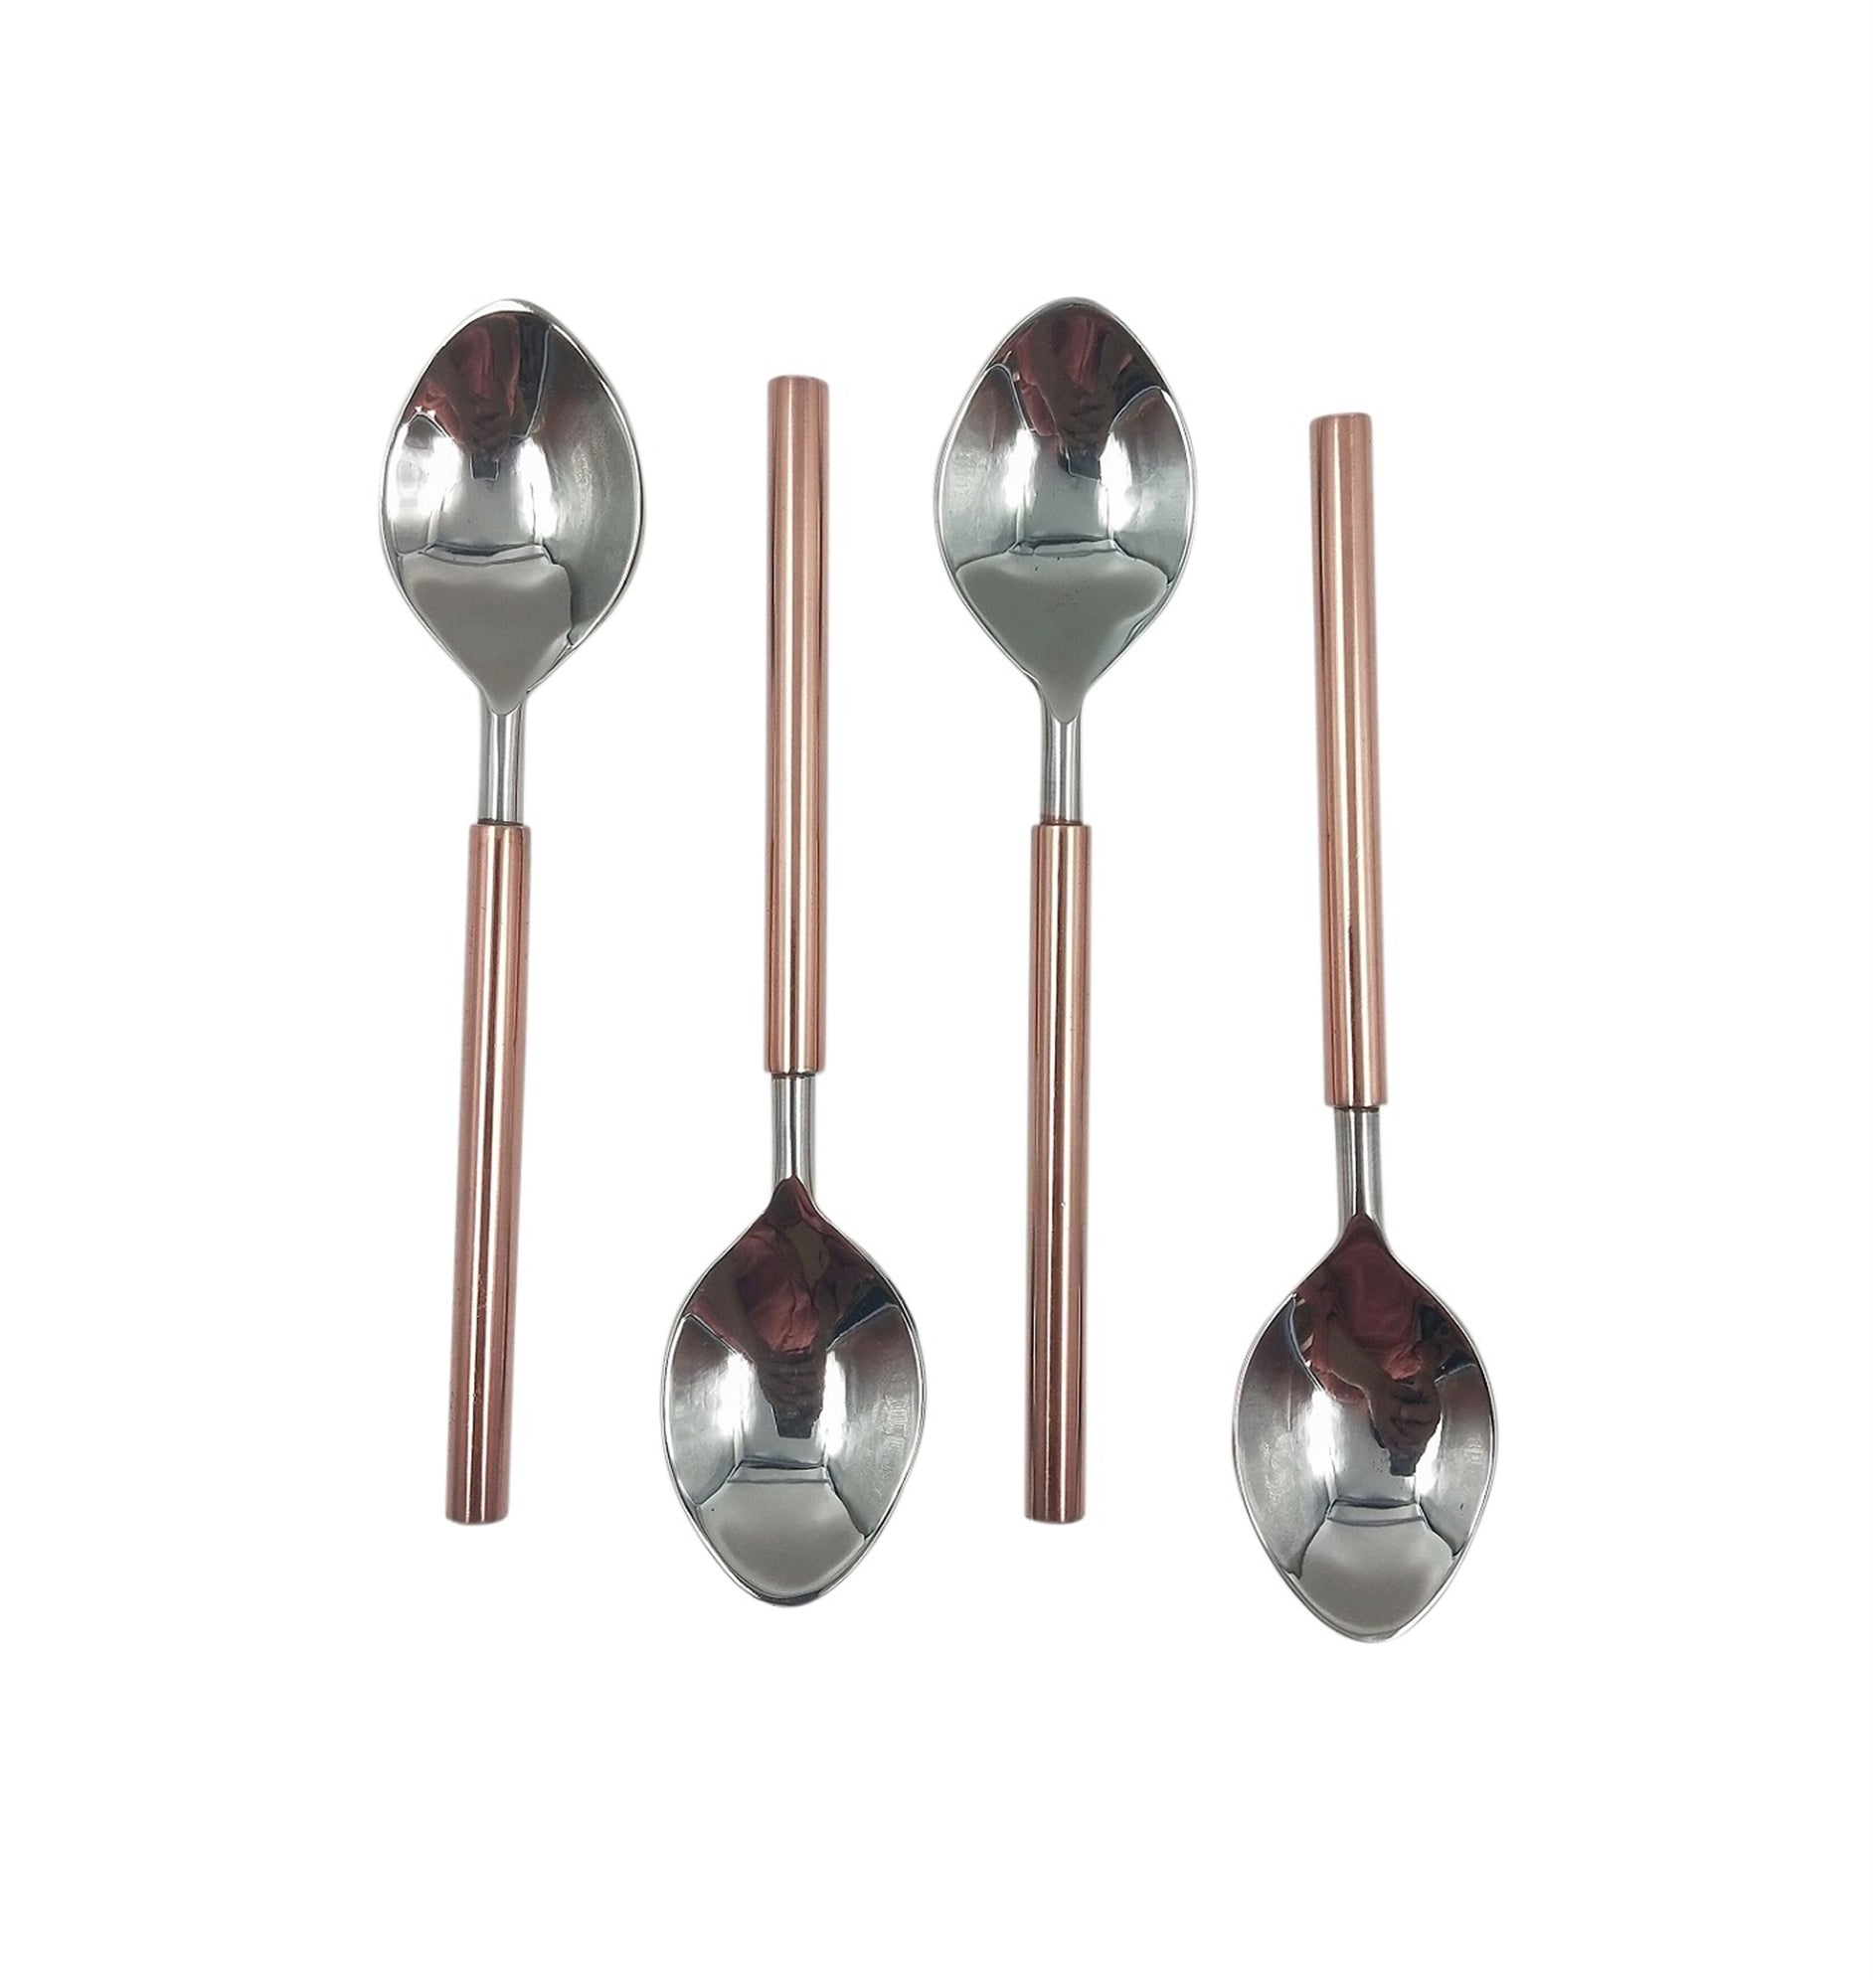 Copper & Silver Spoon Set